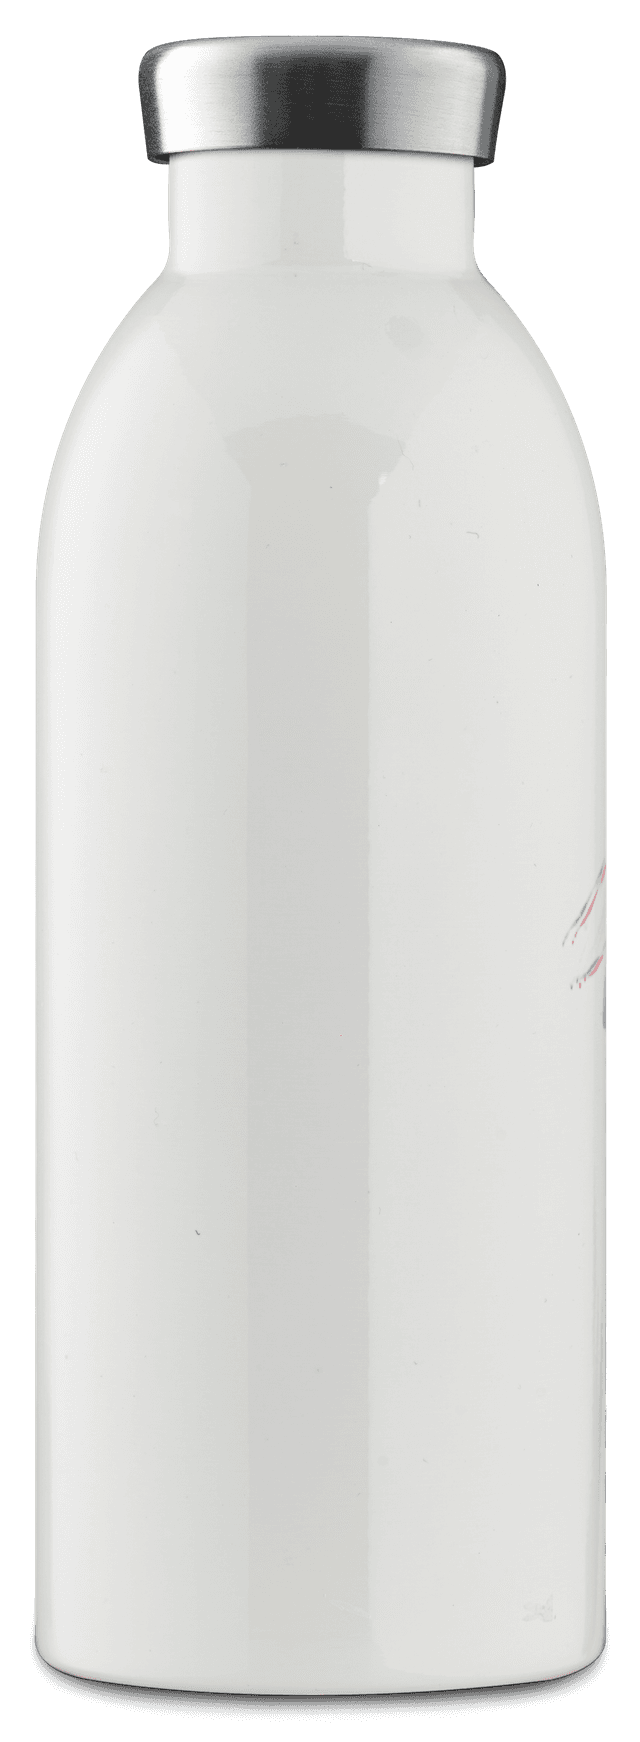 قنينة ماء معدنية - 500 مل - طبعة أزهار -  CLIMA Bottle (500ml) Double Walled Insulated Stainless Steel Water Bottle, Eco-Friendly Reusable BPA - 24Bottles - SW1hZ2U6MzU4ODM0